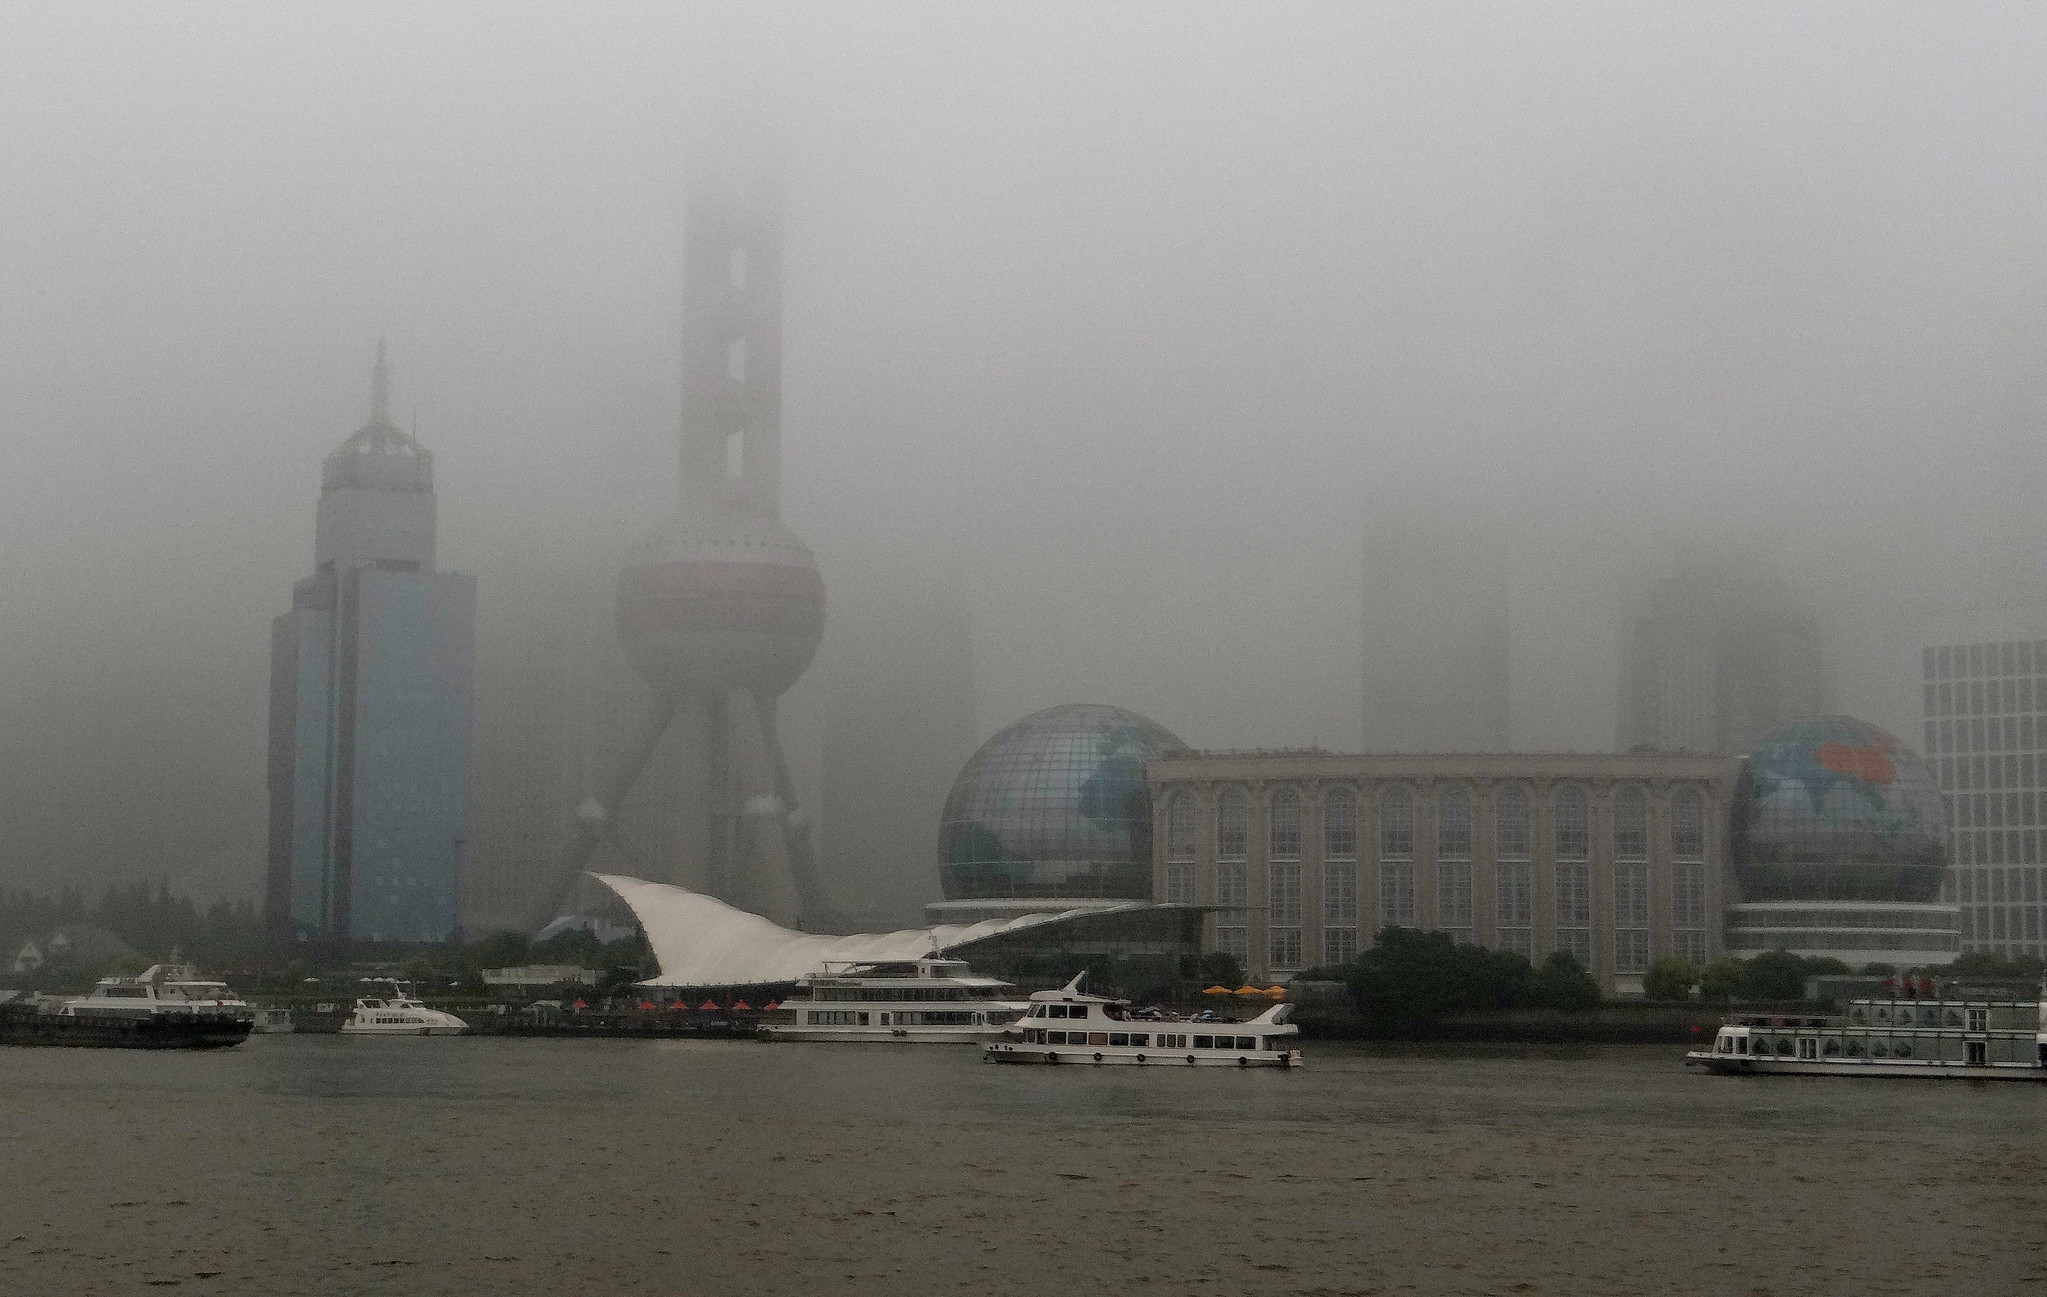 Shanghai Skyline on a Rainy/Foggy Day